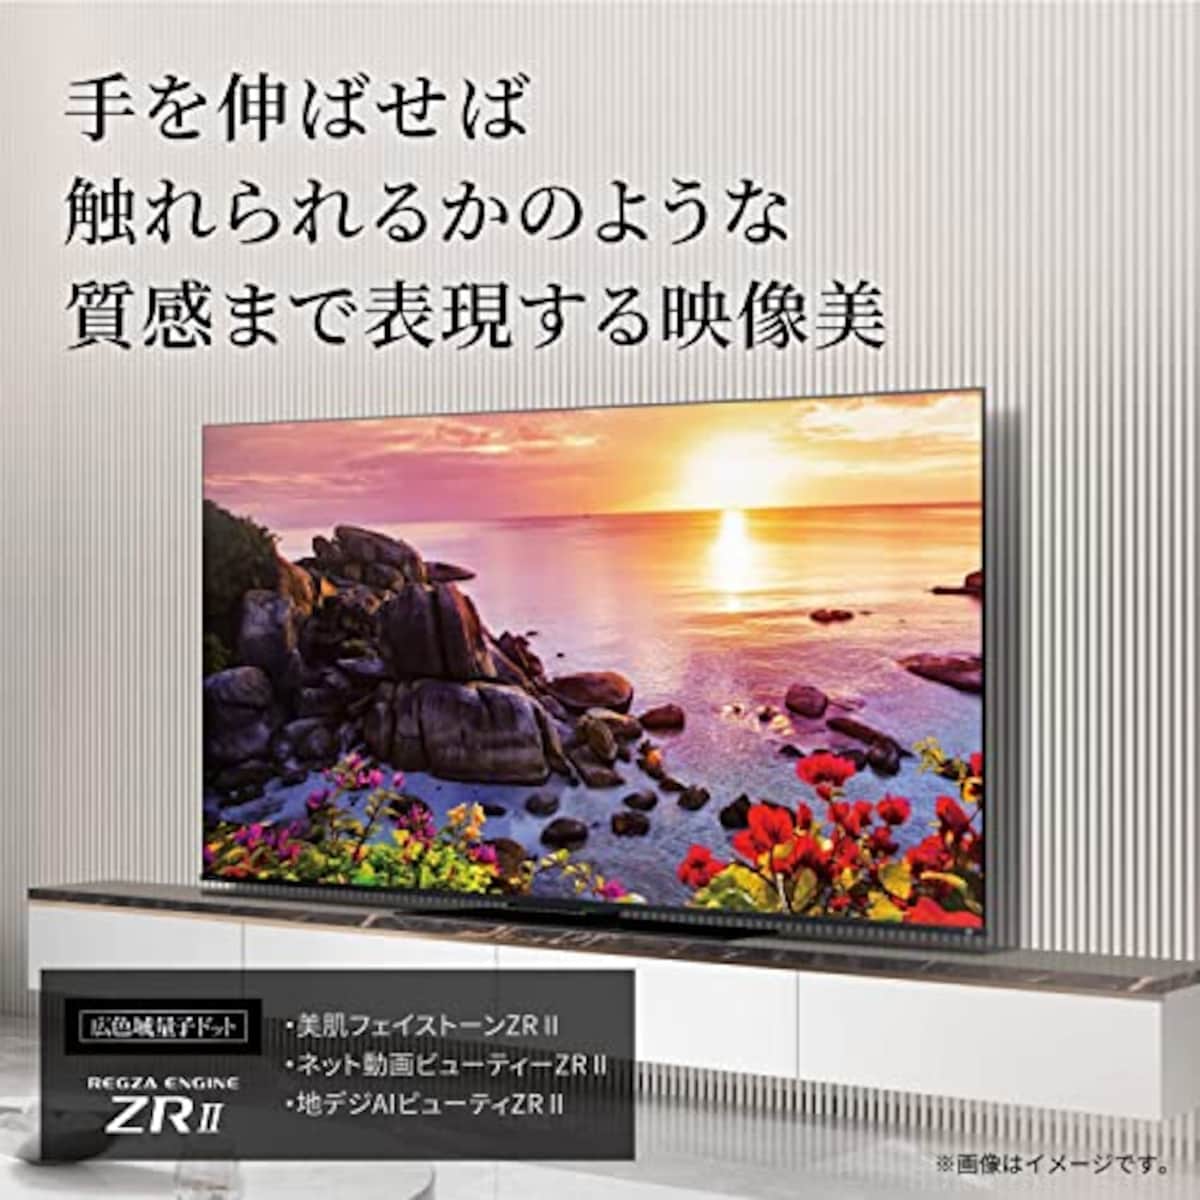  REGZA 65インチ 4K液晶テレビ 65Z770L 4Kチューナー内蔵 外付けHDD 裏番組録画 スマートテレビ (2022年モデル)画像3 